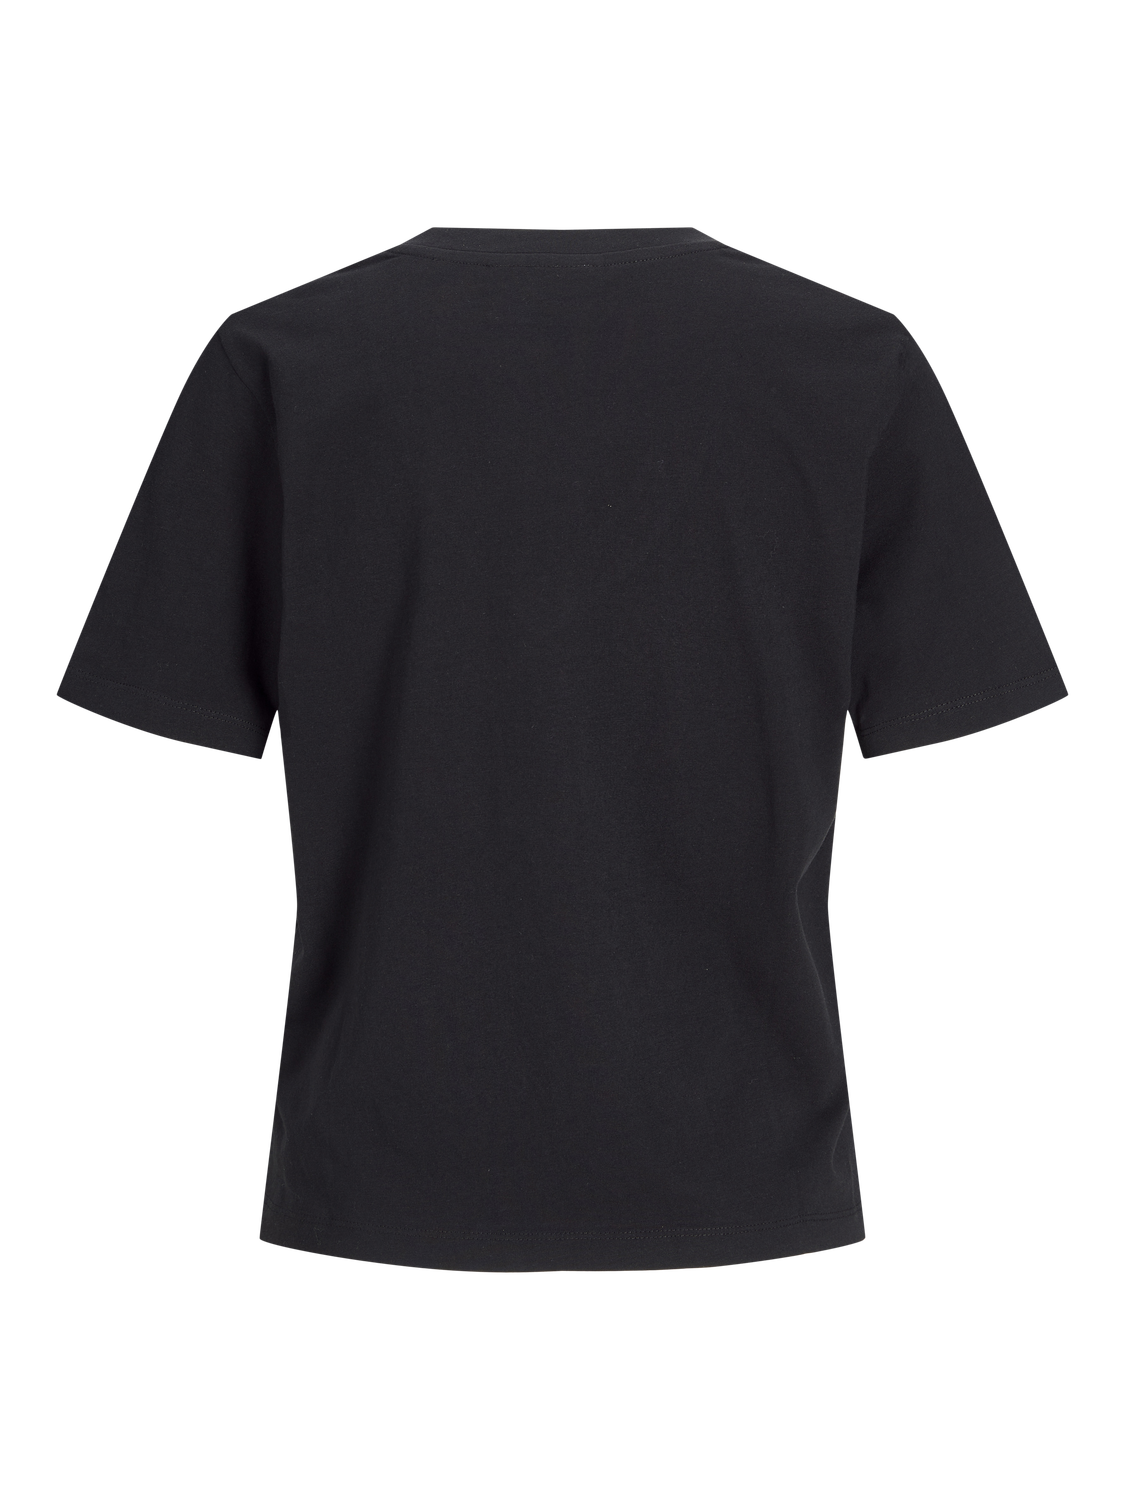 JJXX JXANNIE T-shirt -Black - 12255655